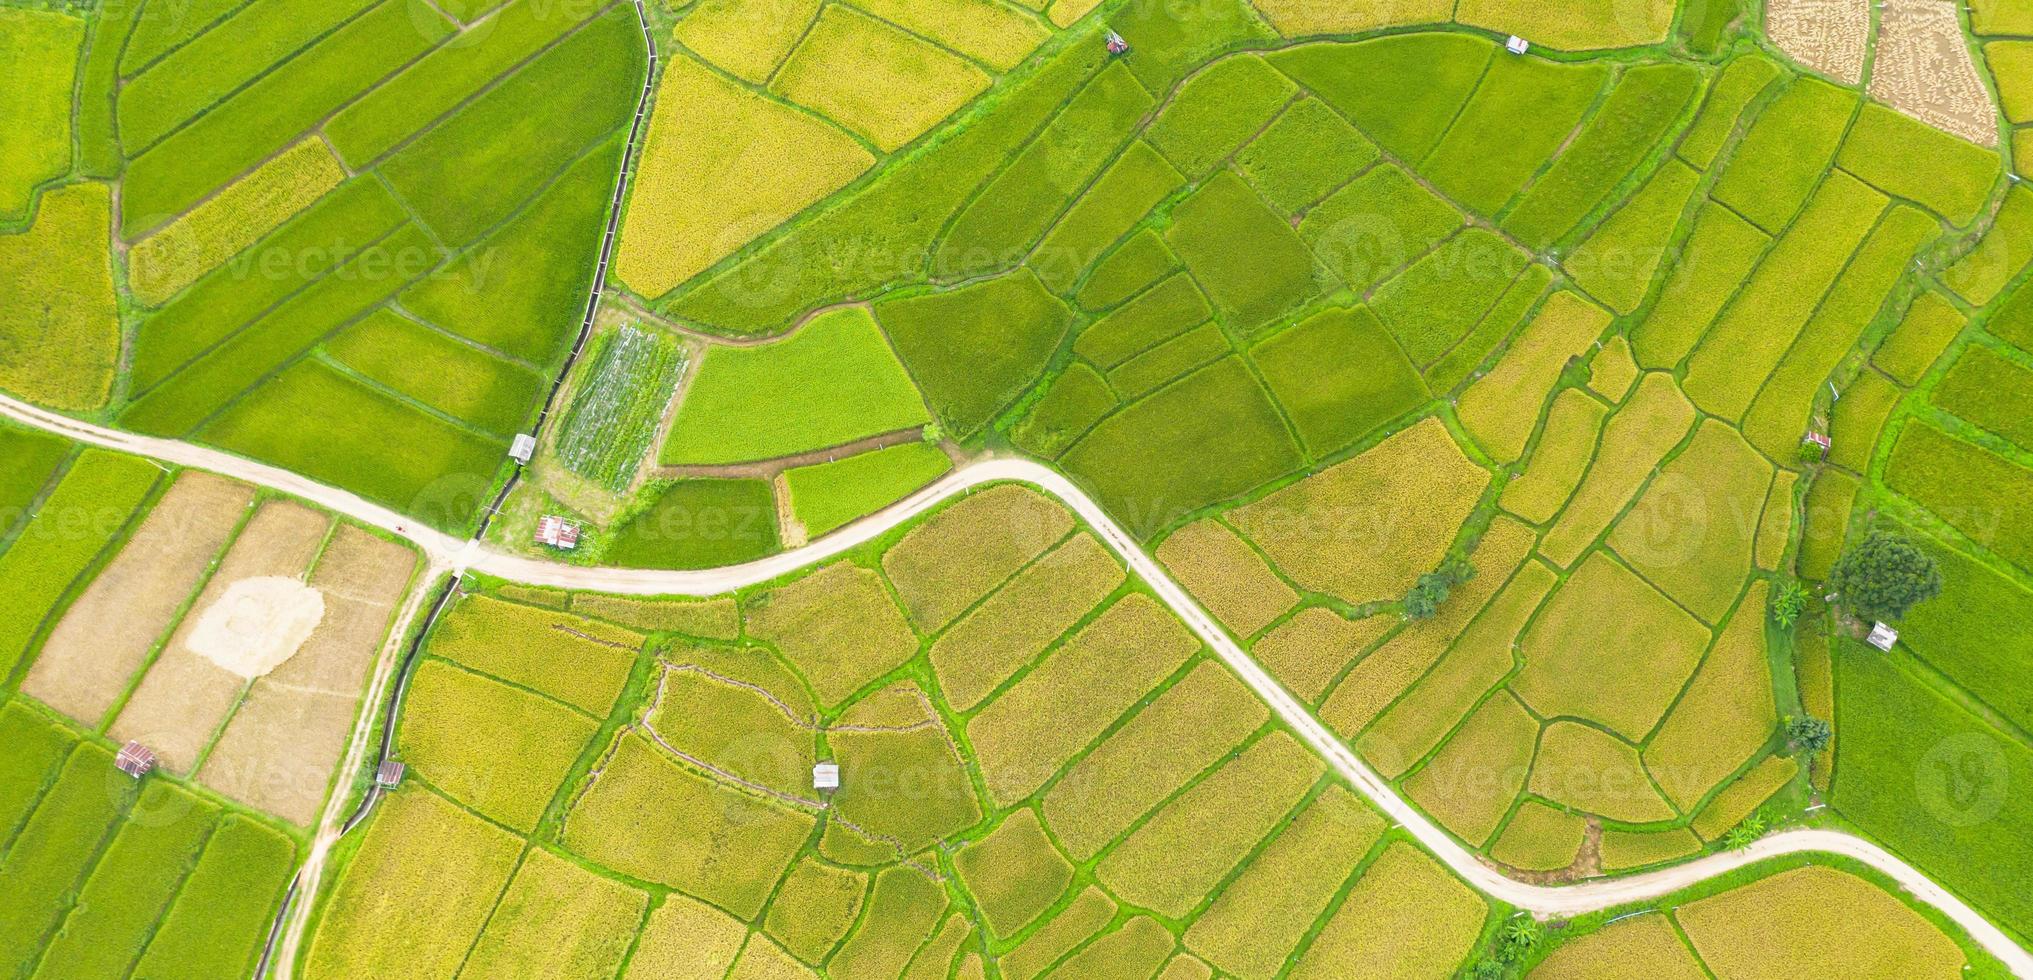 vista aérea del campo de arroz verde y amarillo foto